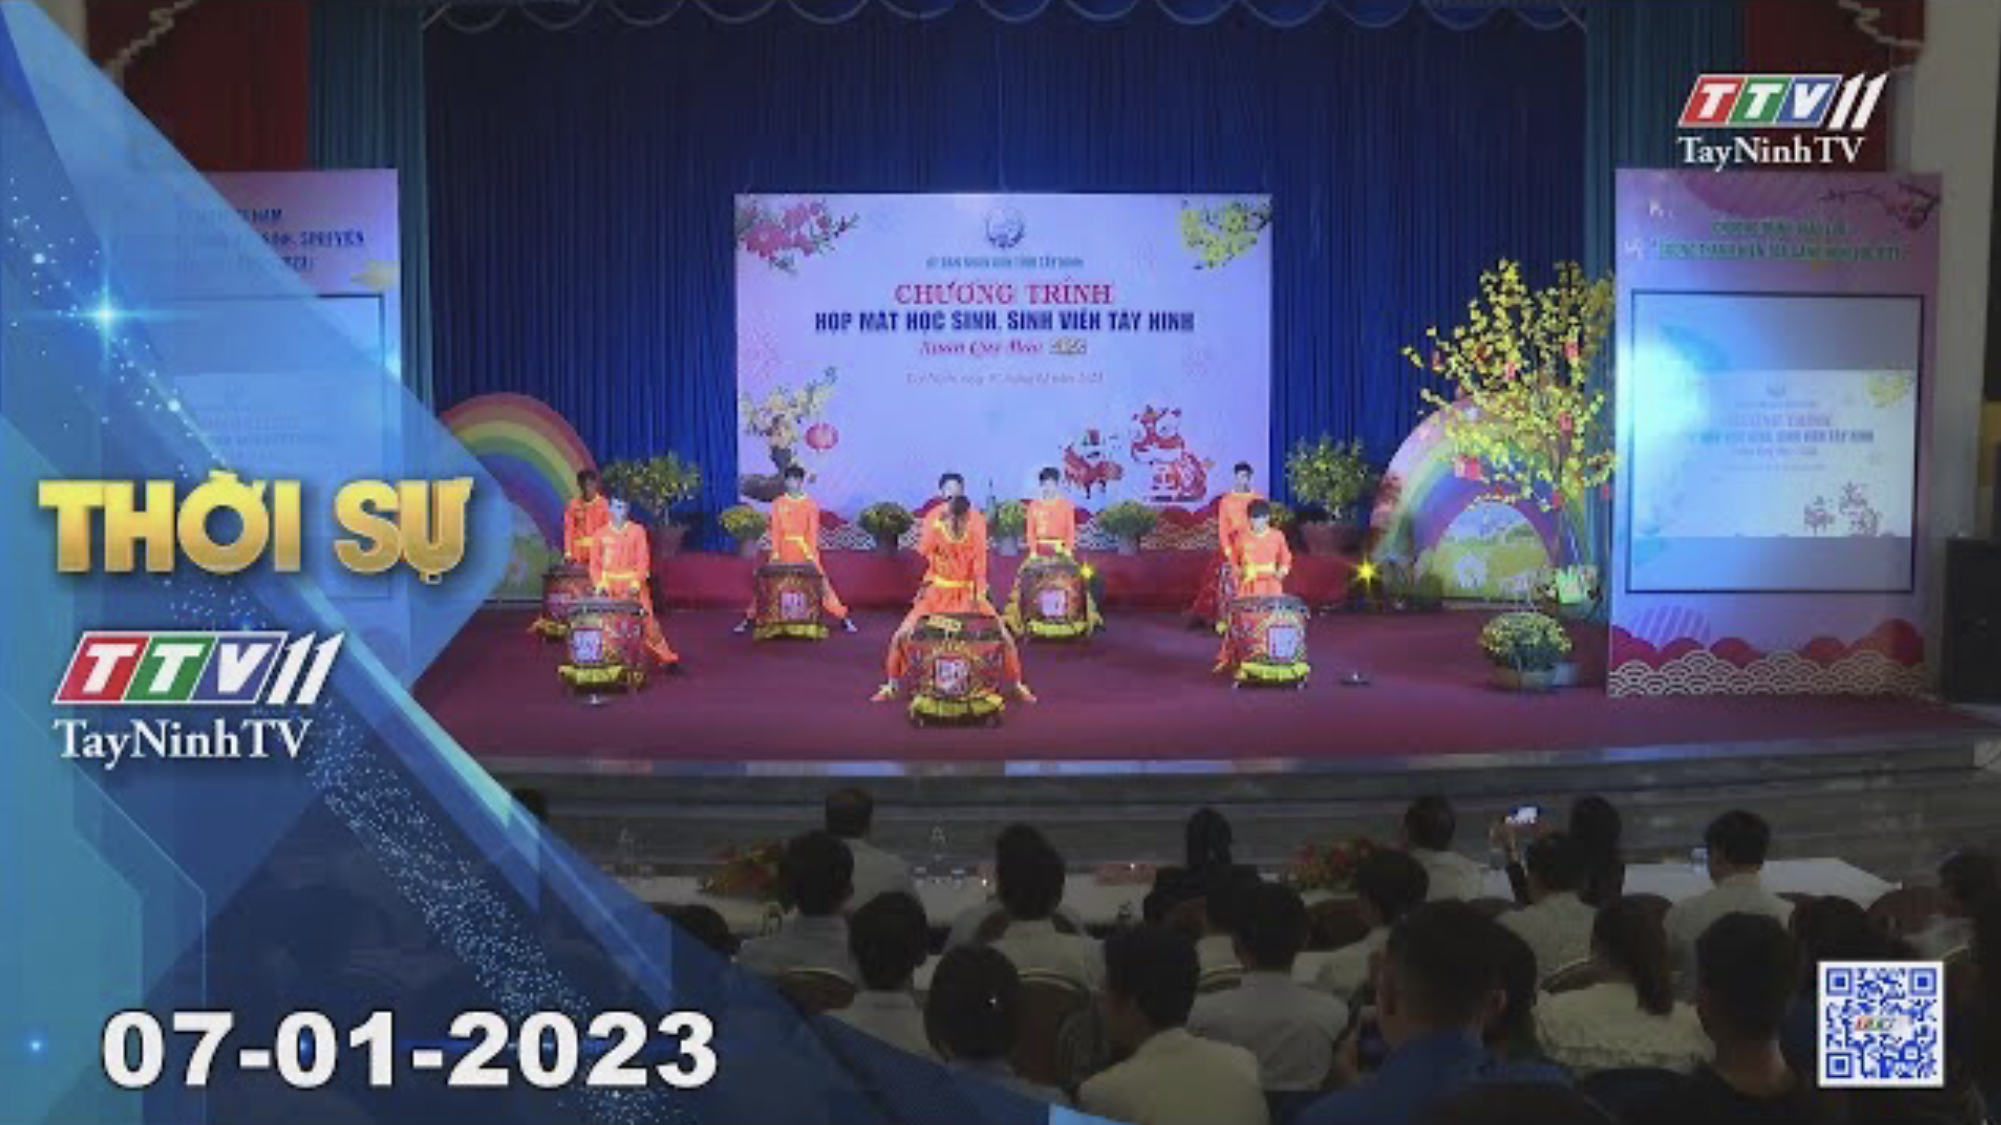 Thời sự Tây Ninh 07-01-2023 | Tin tức hôm nay | TayNinhTV